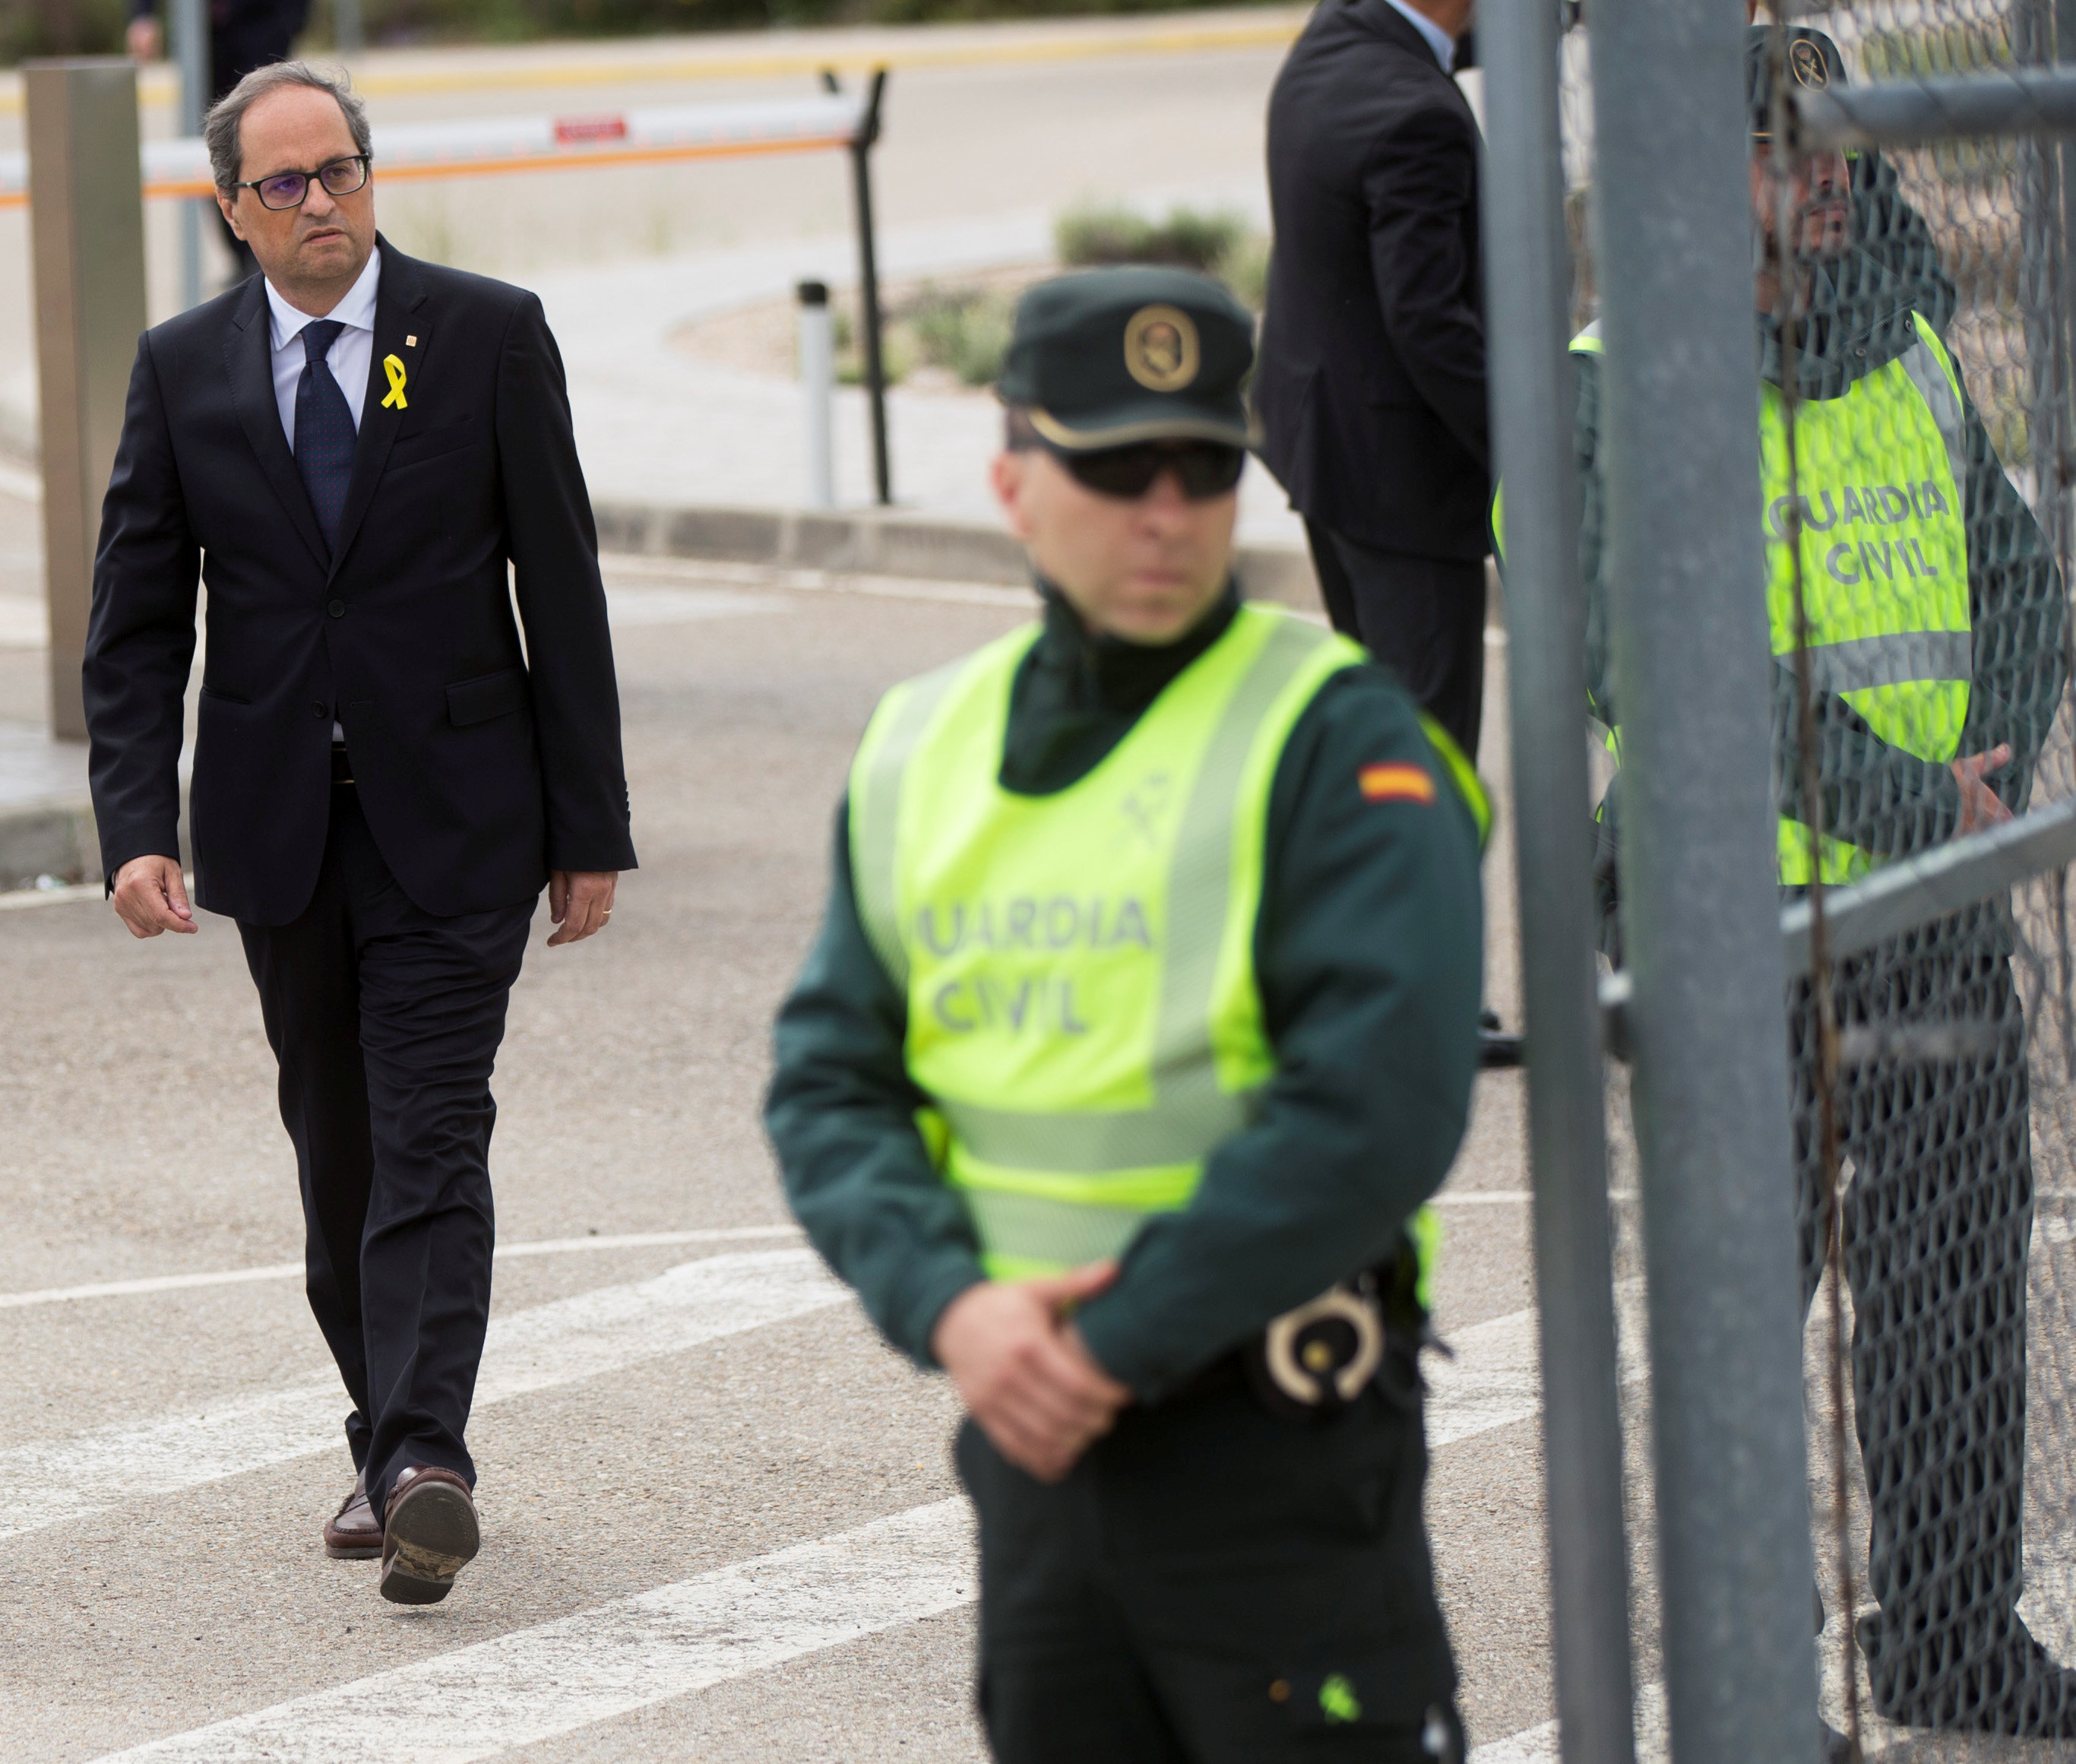 Ισπανία: Δεν επικυρώνει την περιφερειακή κυβέρνηση της Καταλωνίας